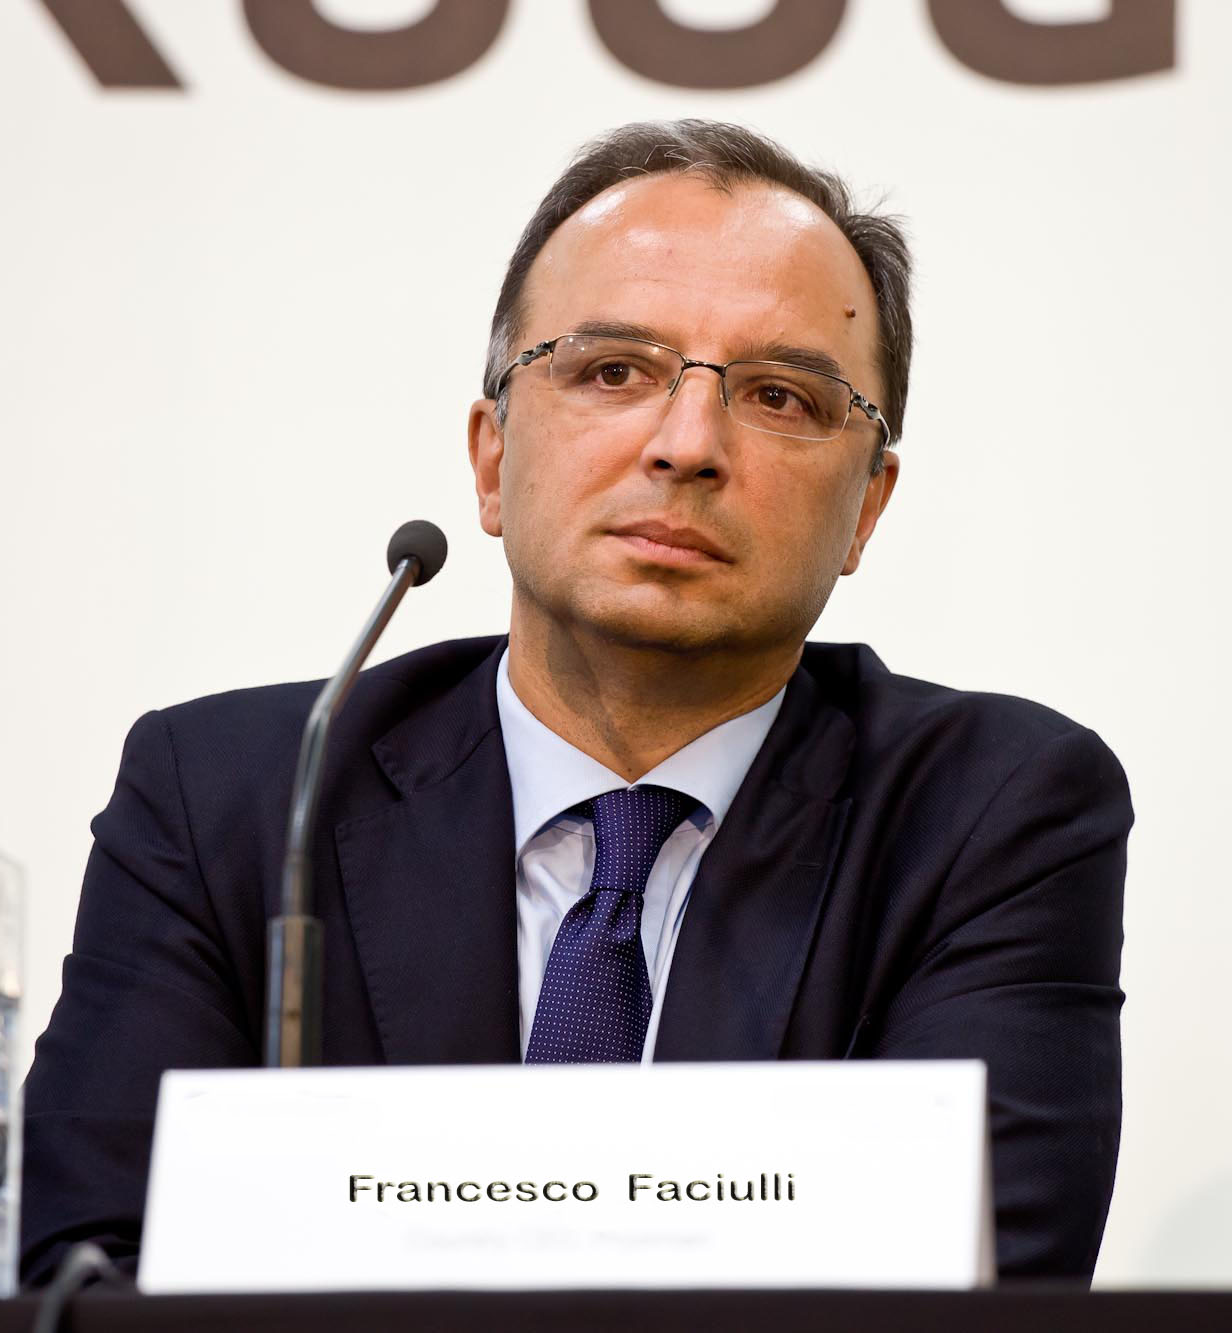 Francesco-Fanciulli_Prysmianff